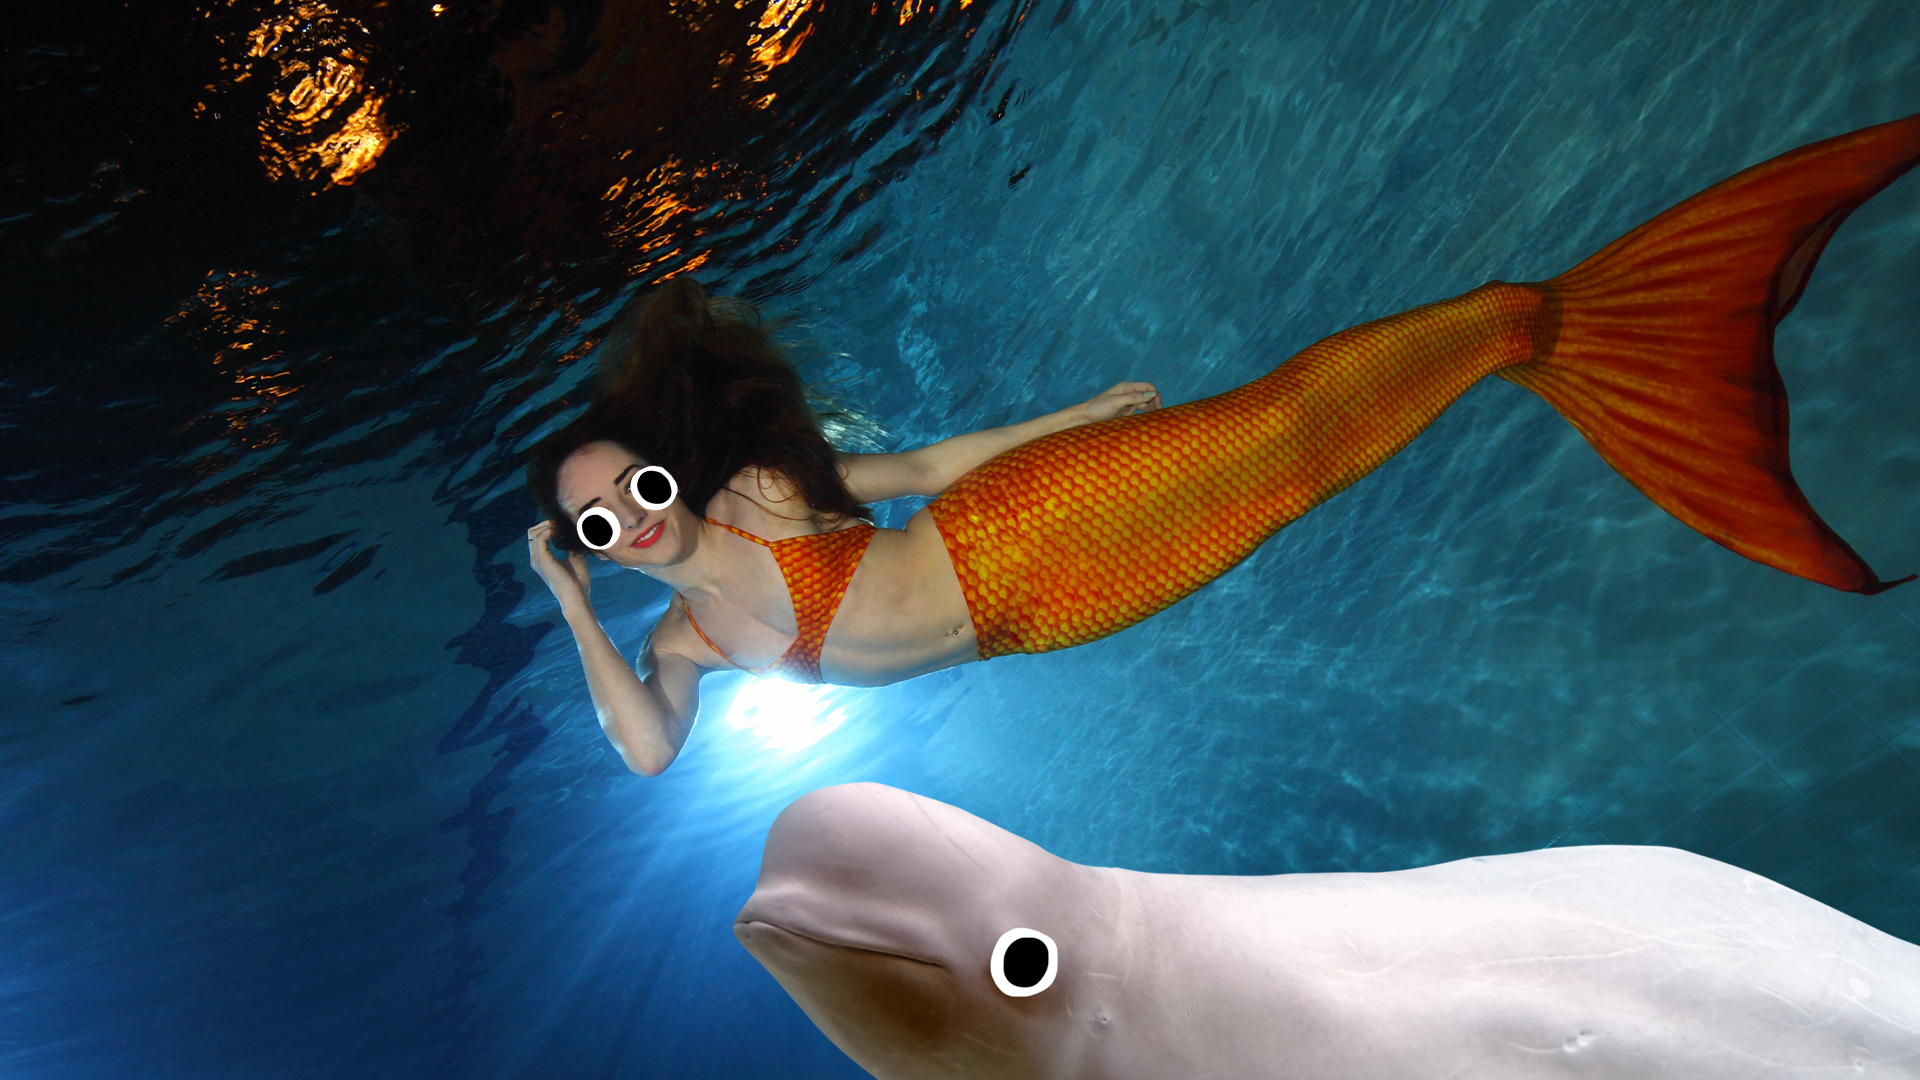 A mermaid and a goofy beluga whale